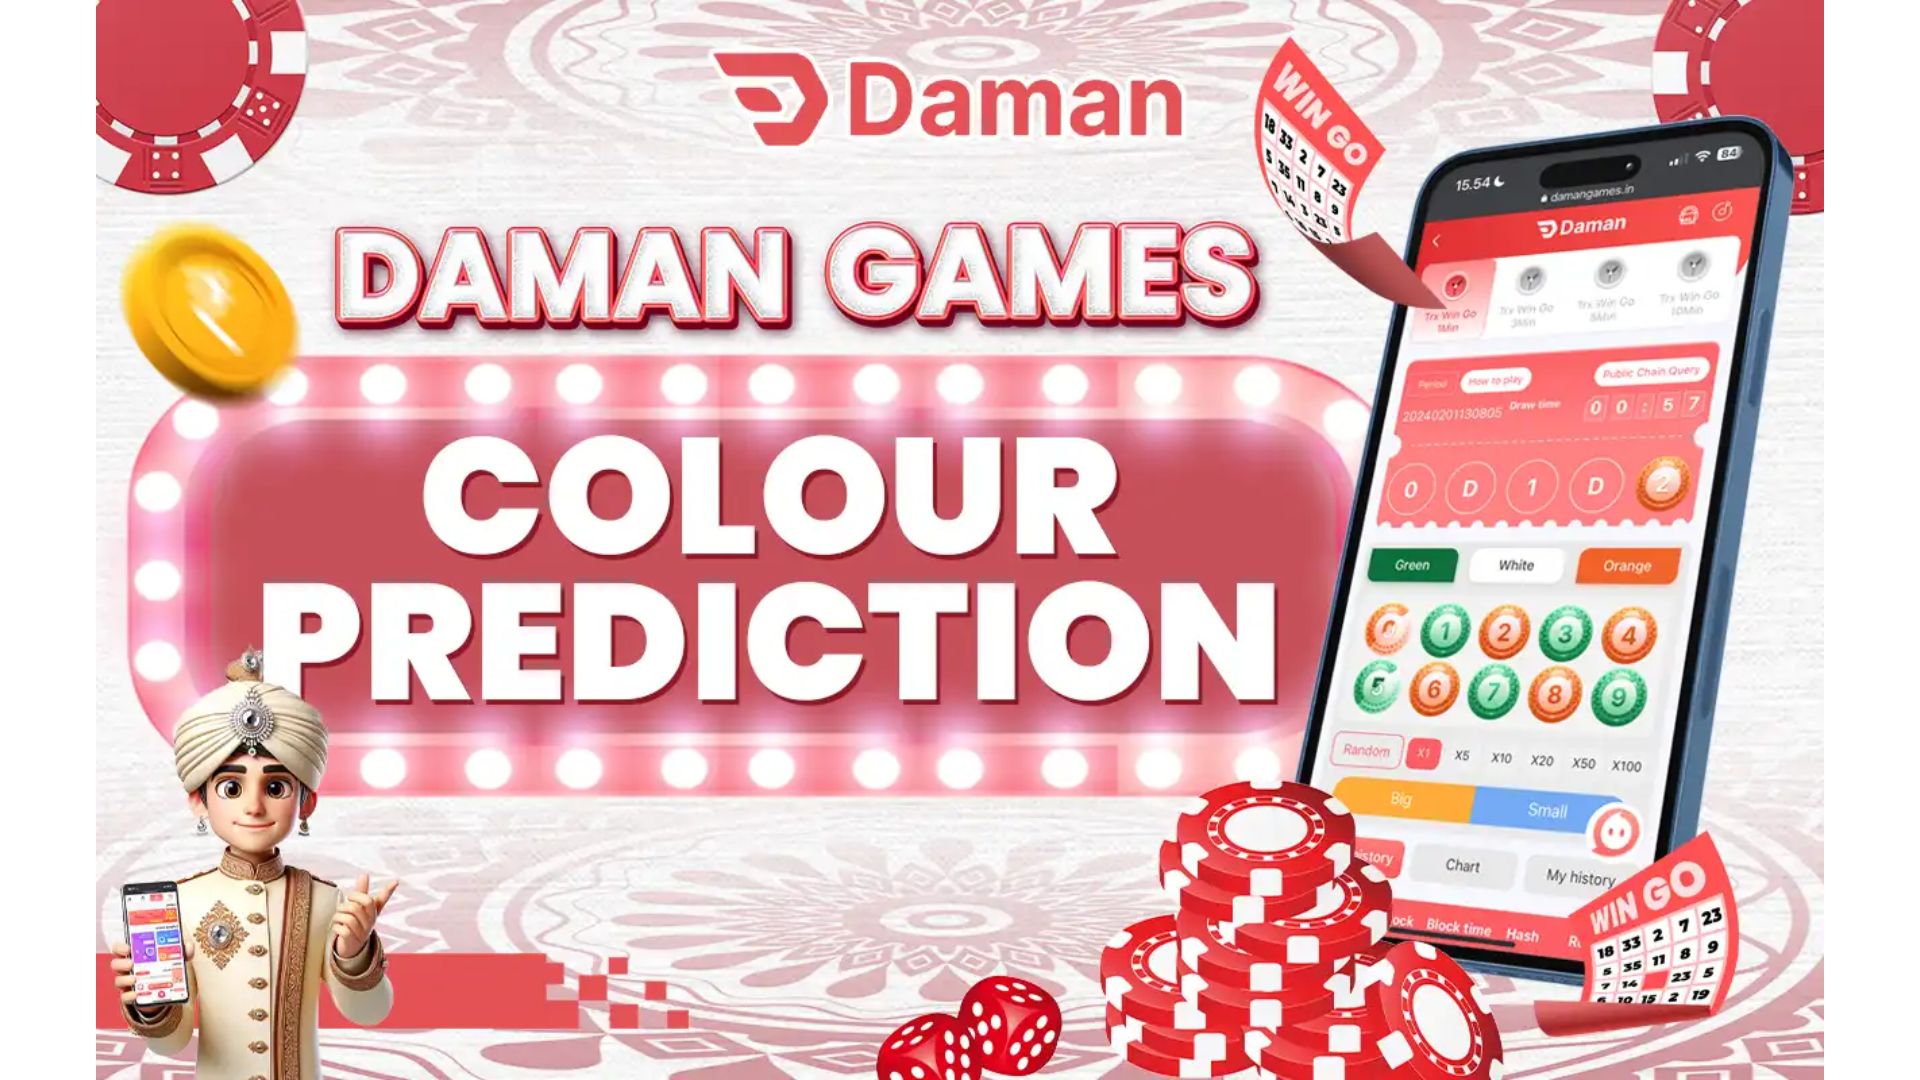 Daman colour prediction game